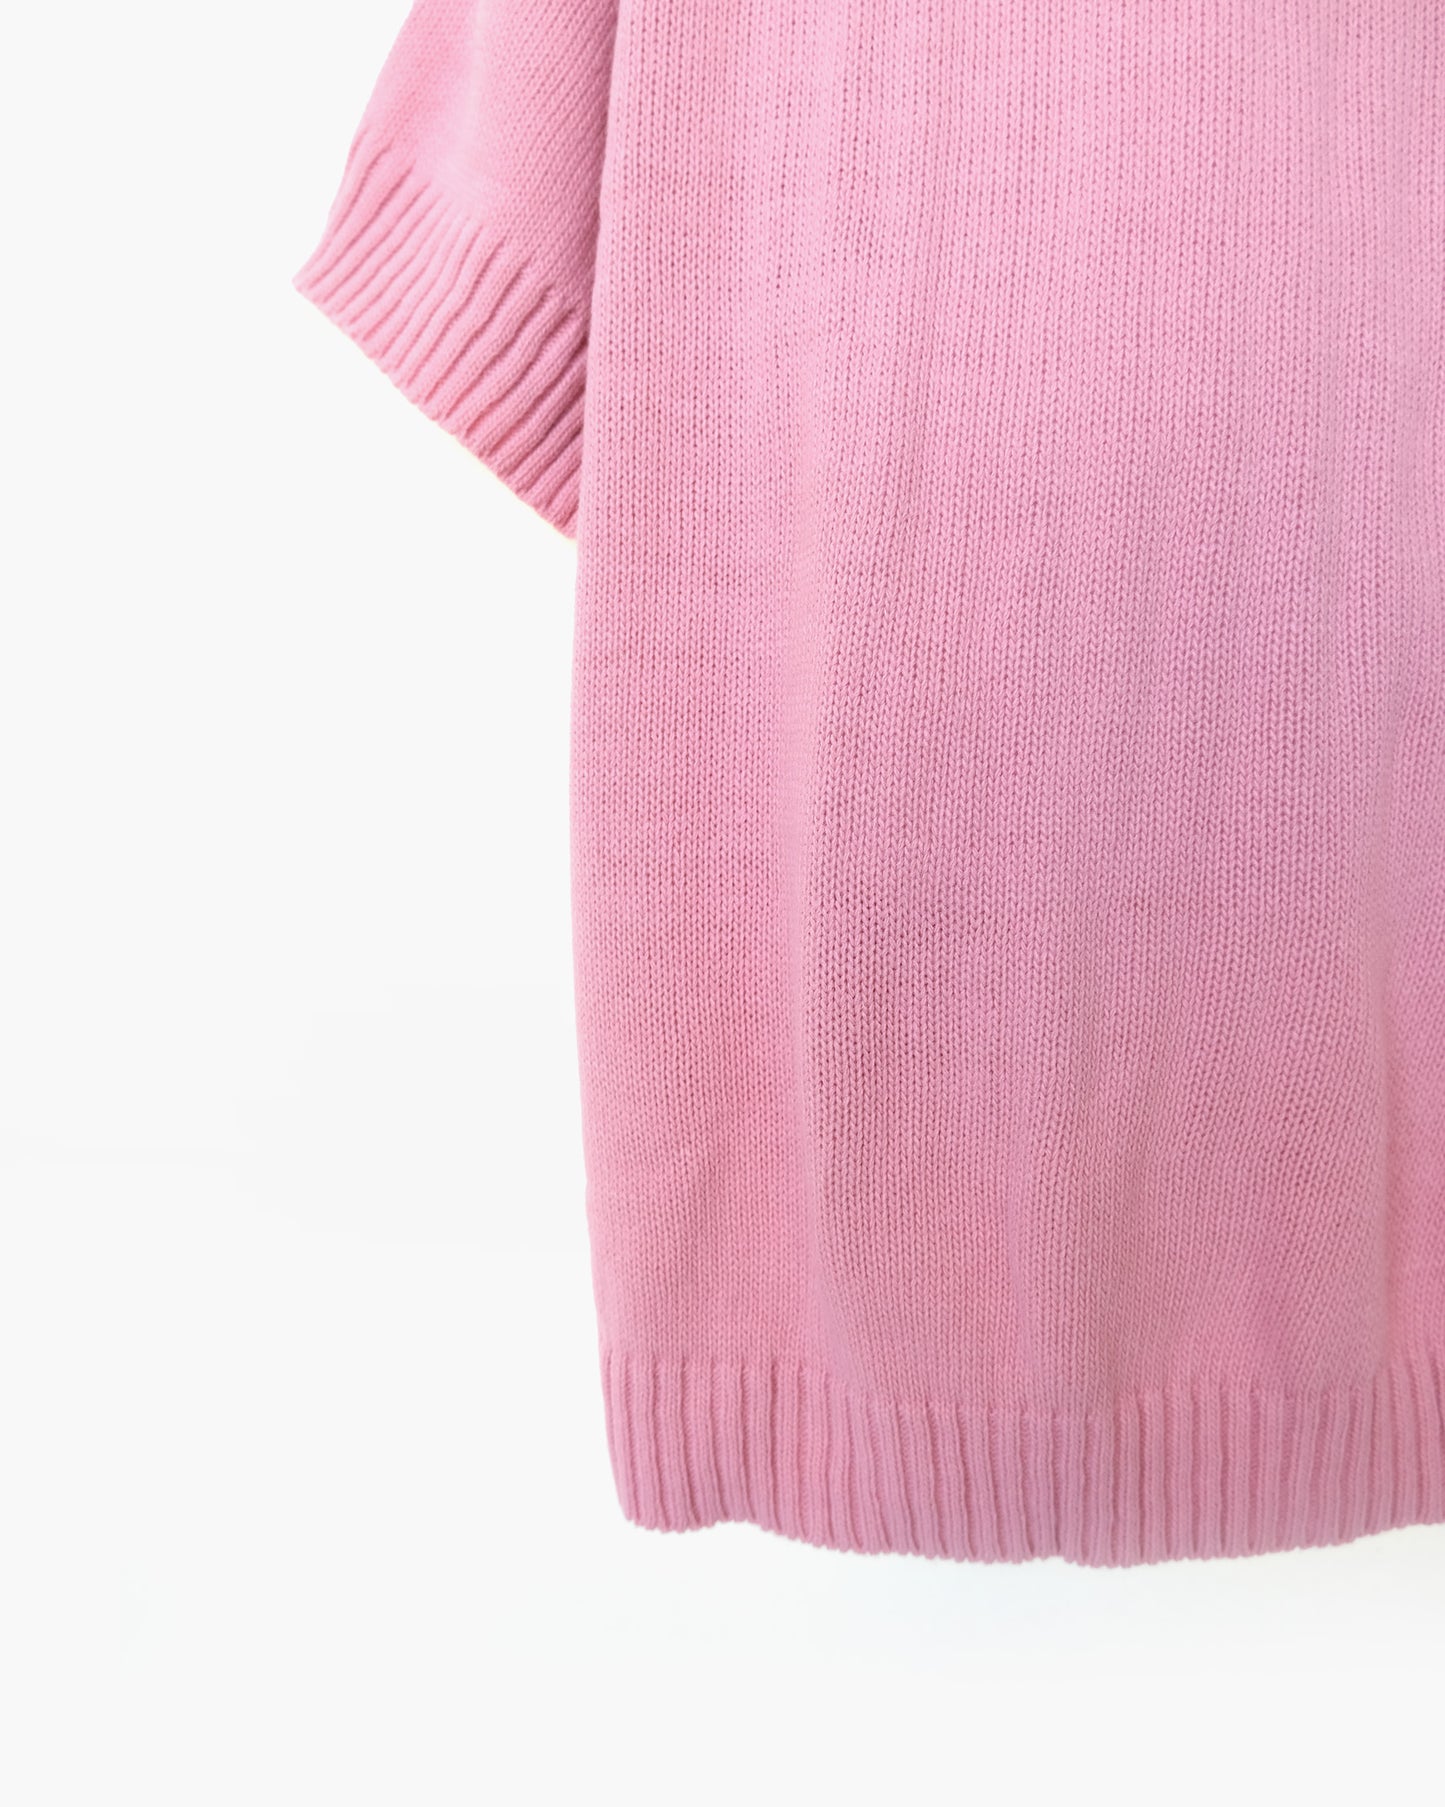 Acrylic Smoke Pink S/S Sweater